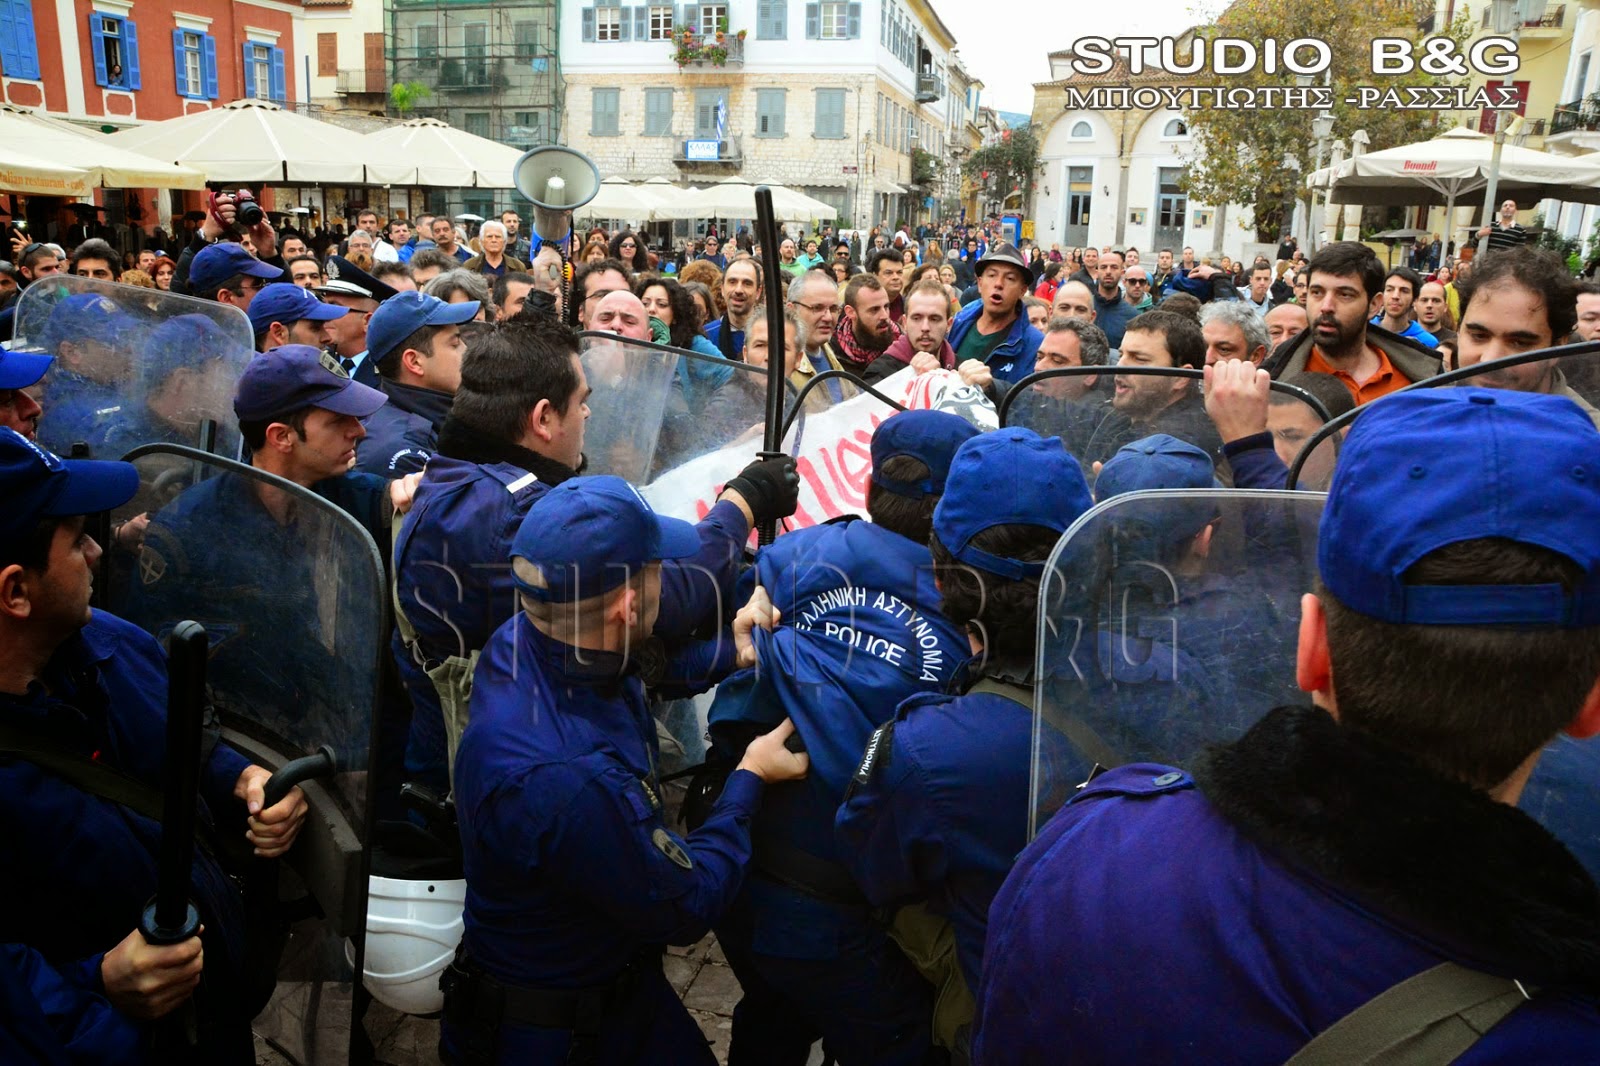 (ΕΛΛΑΔΑ)Αποδοκιμασίες για τον Αντώνη Σαμαρά στο Ναύπλιο Συγκρούσεις διαδηλωτών και αστυνομικών (βίντεο)